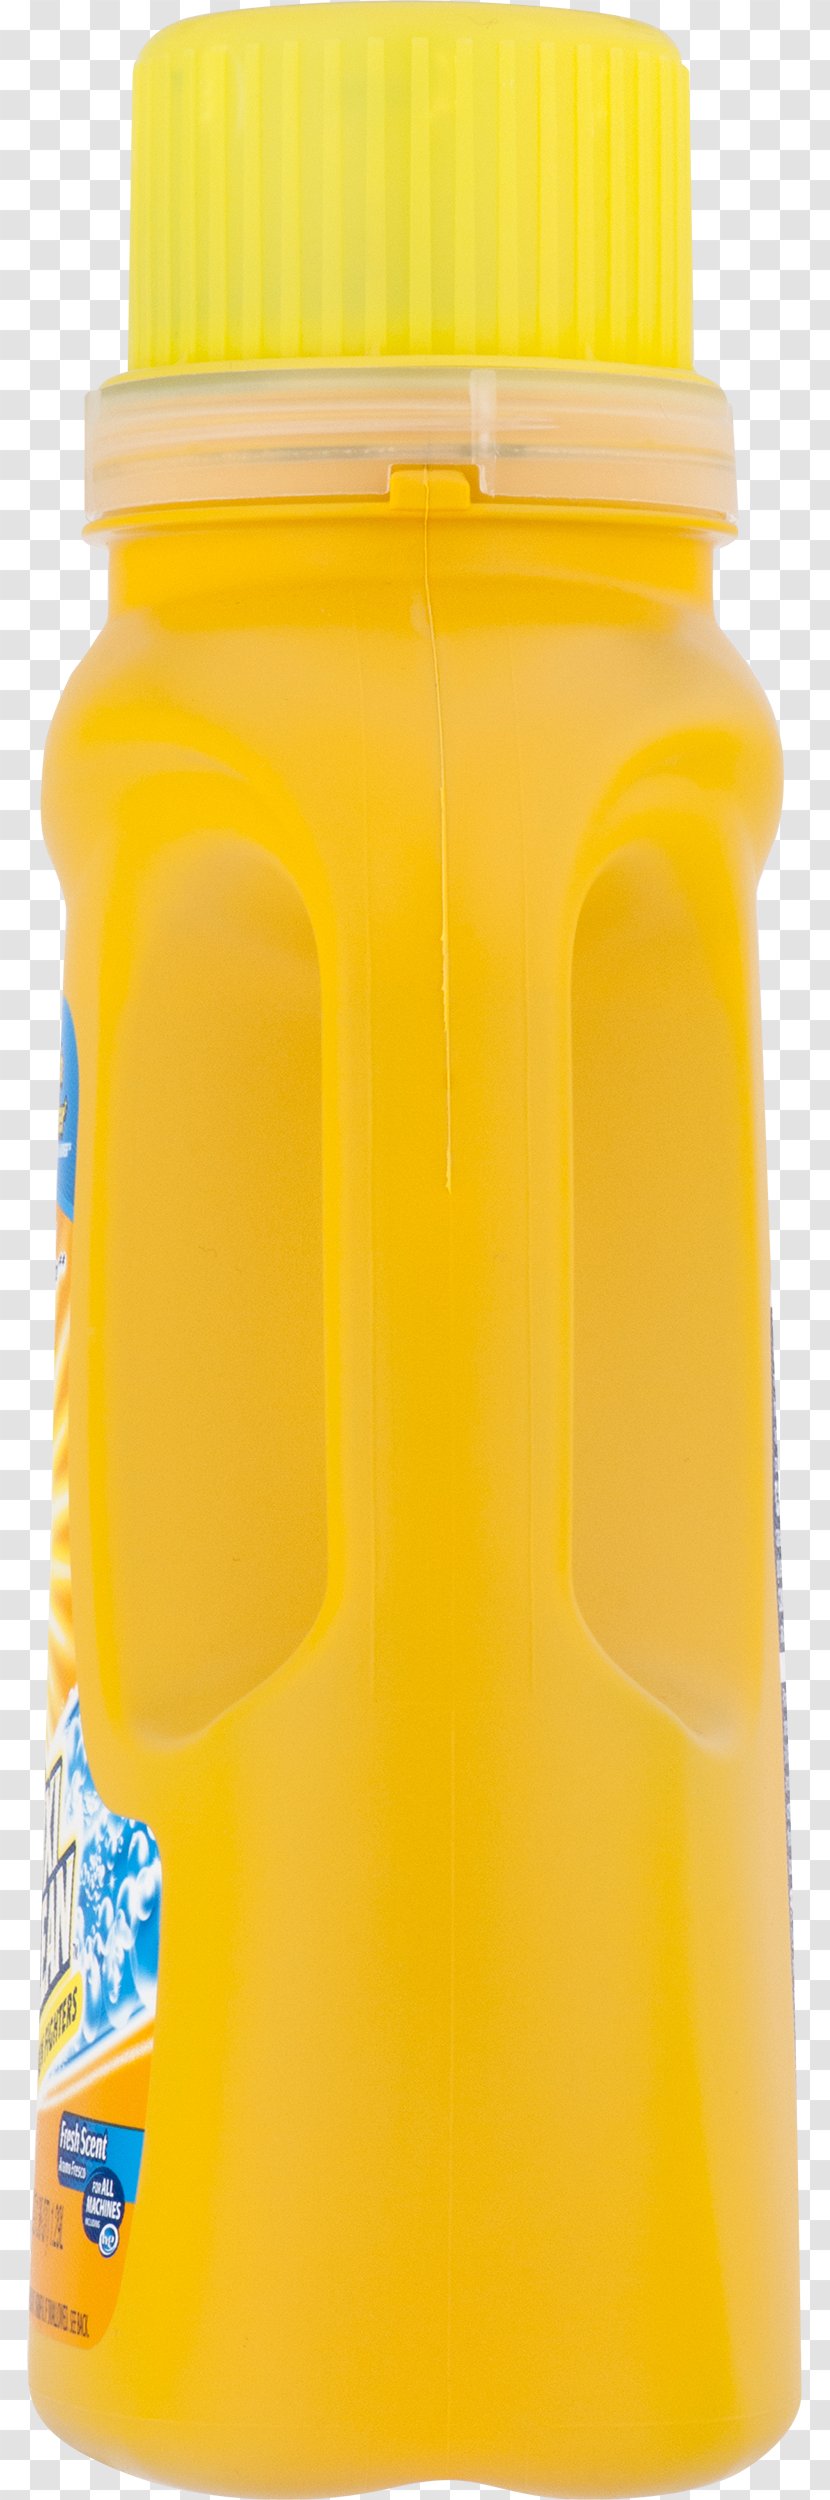 Orange Drink Soft Juice Water Bottles Plastic Bottle Transparent PNG